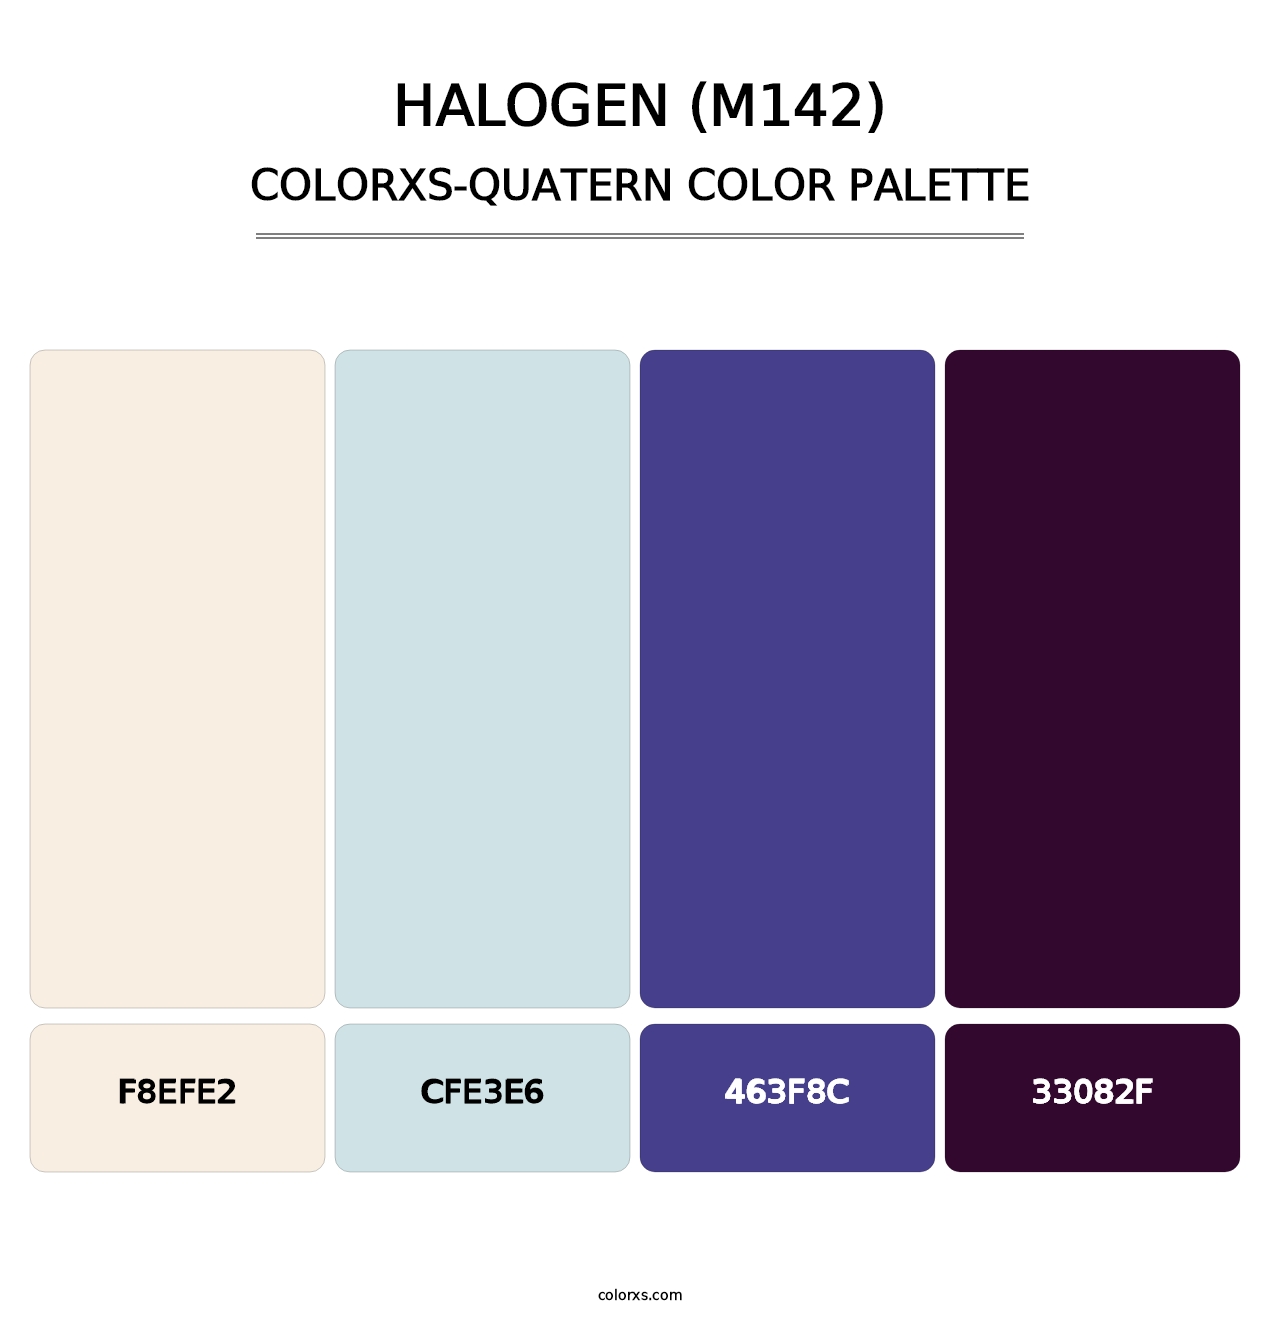 Halogen (M142) - Colorxs Quatern Palette